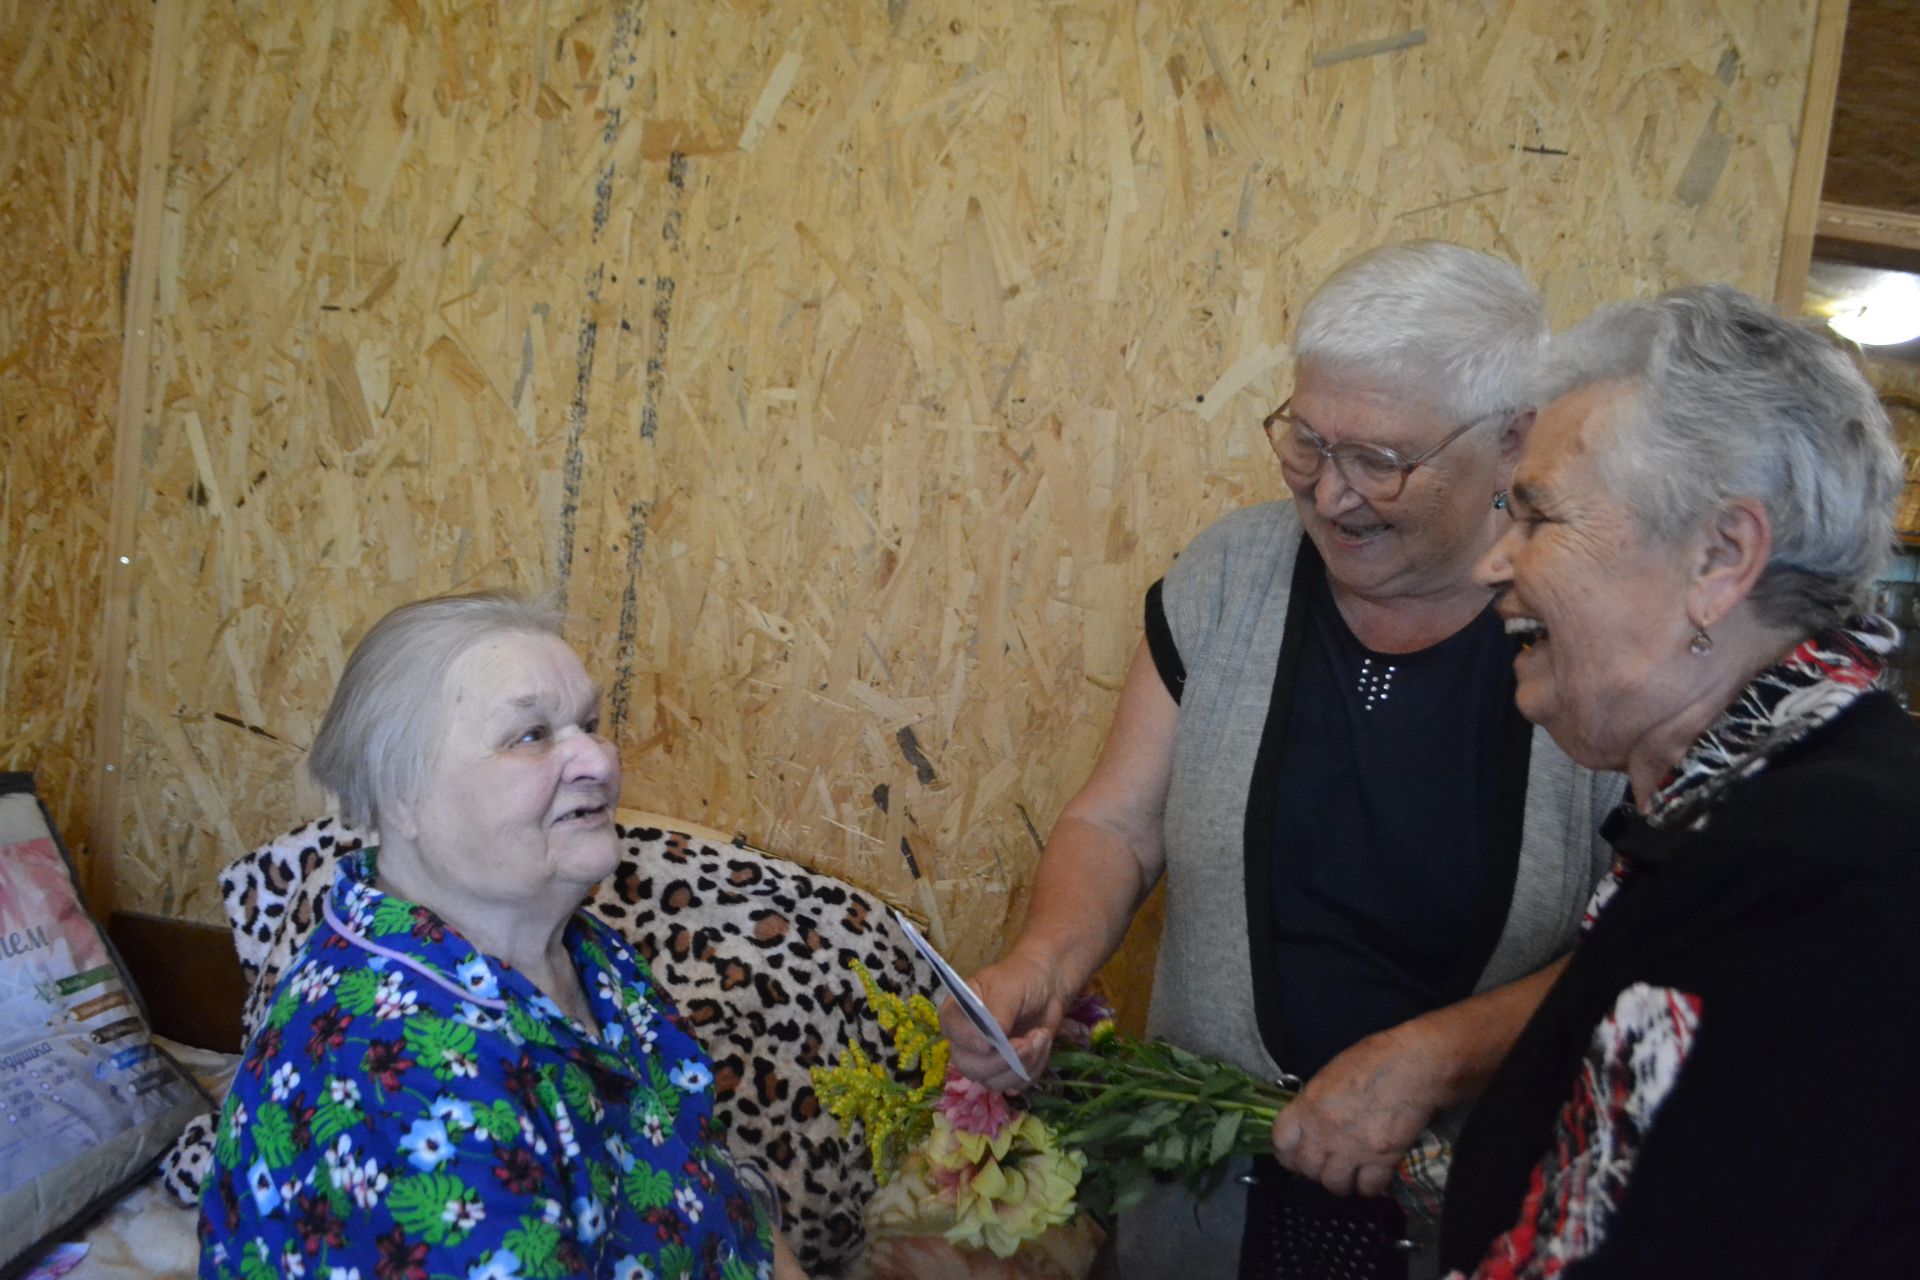 Любовь Фирсова из Нижнего Услона отметила красивый юбилей - 90 лет!